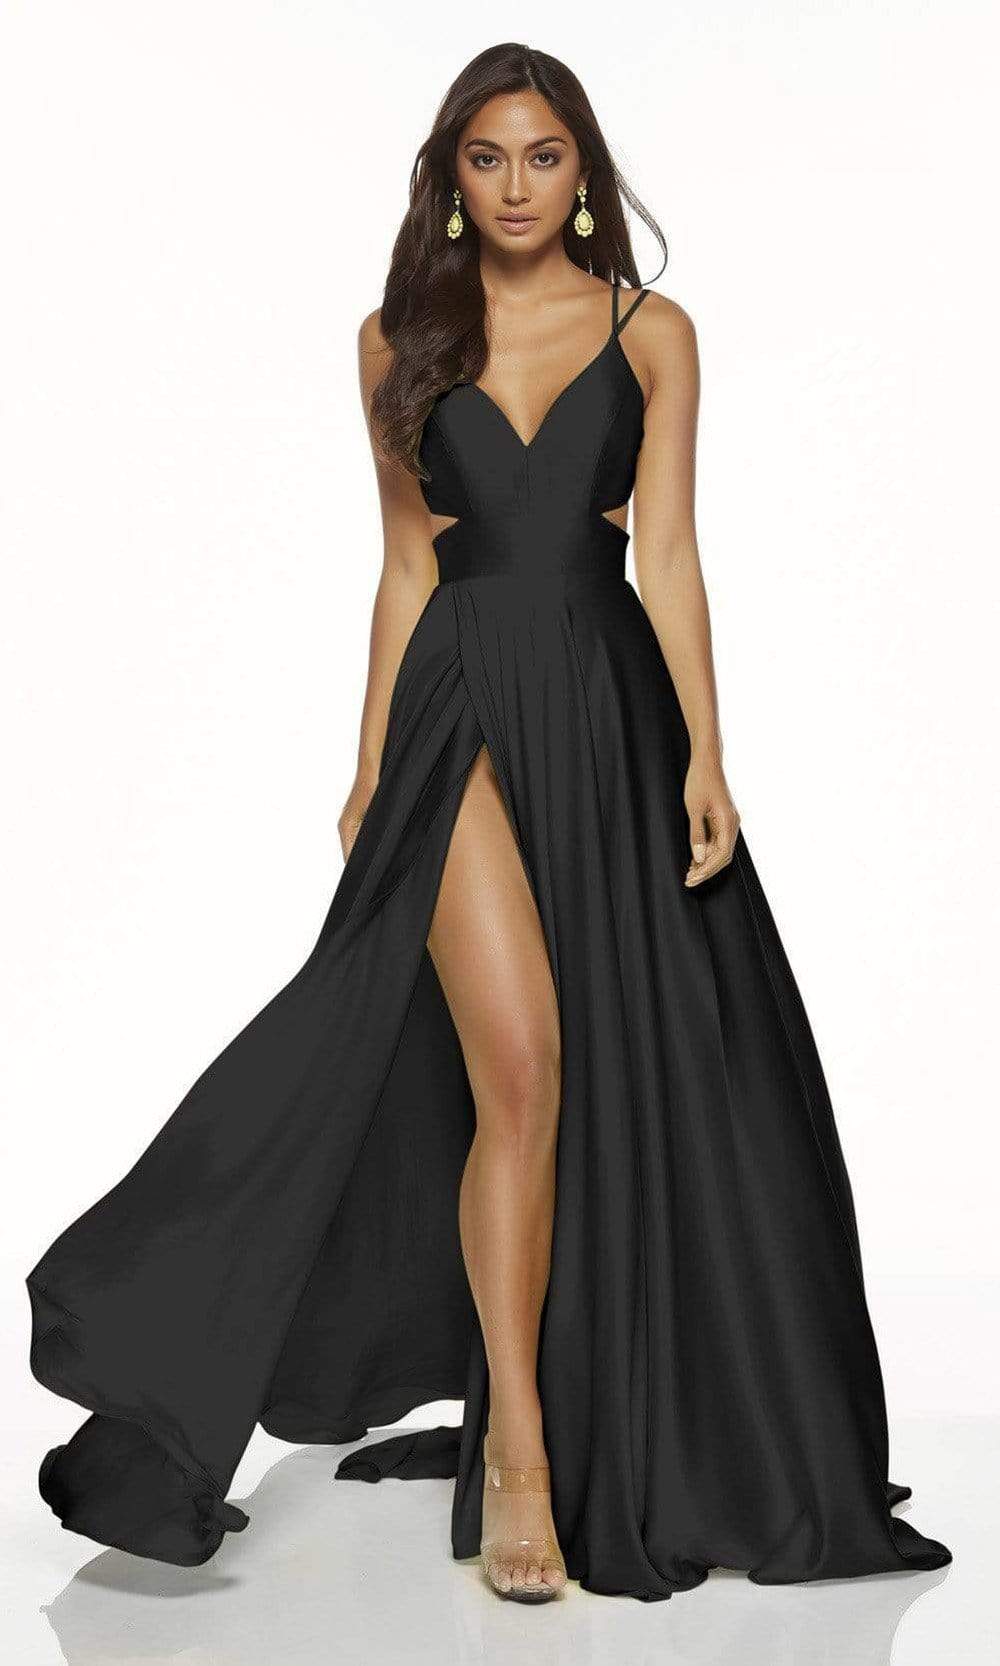 Alyce Paris 60453 - Dual Strap A-Line Evening Gown Bridesmaid Dresses